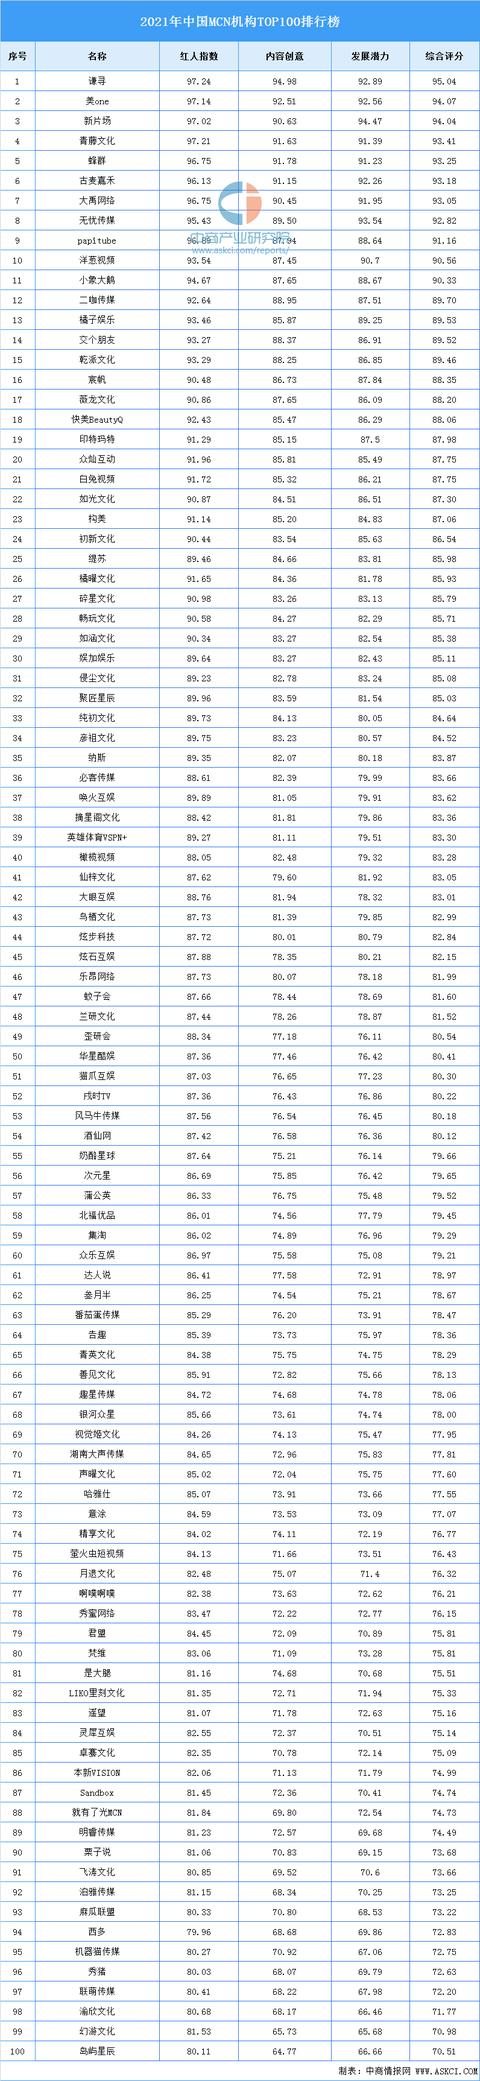 2021年中国MCN机构TOP100排行榜